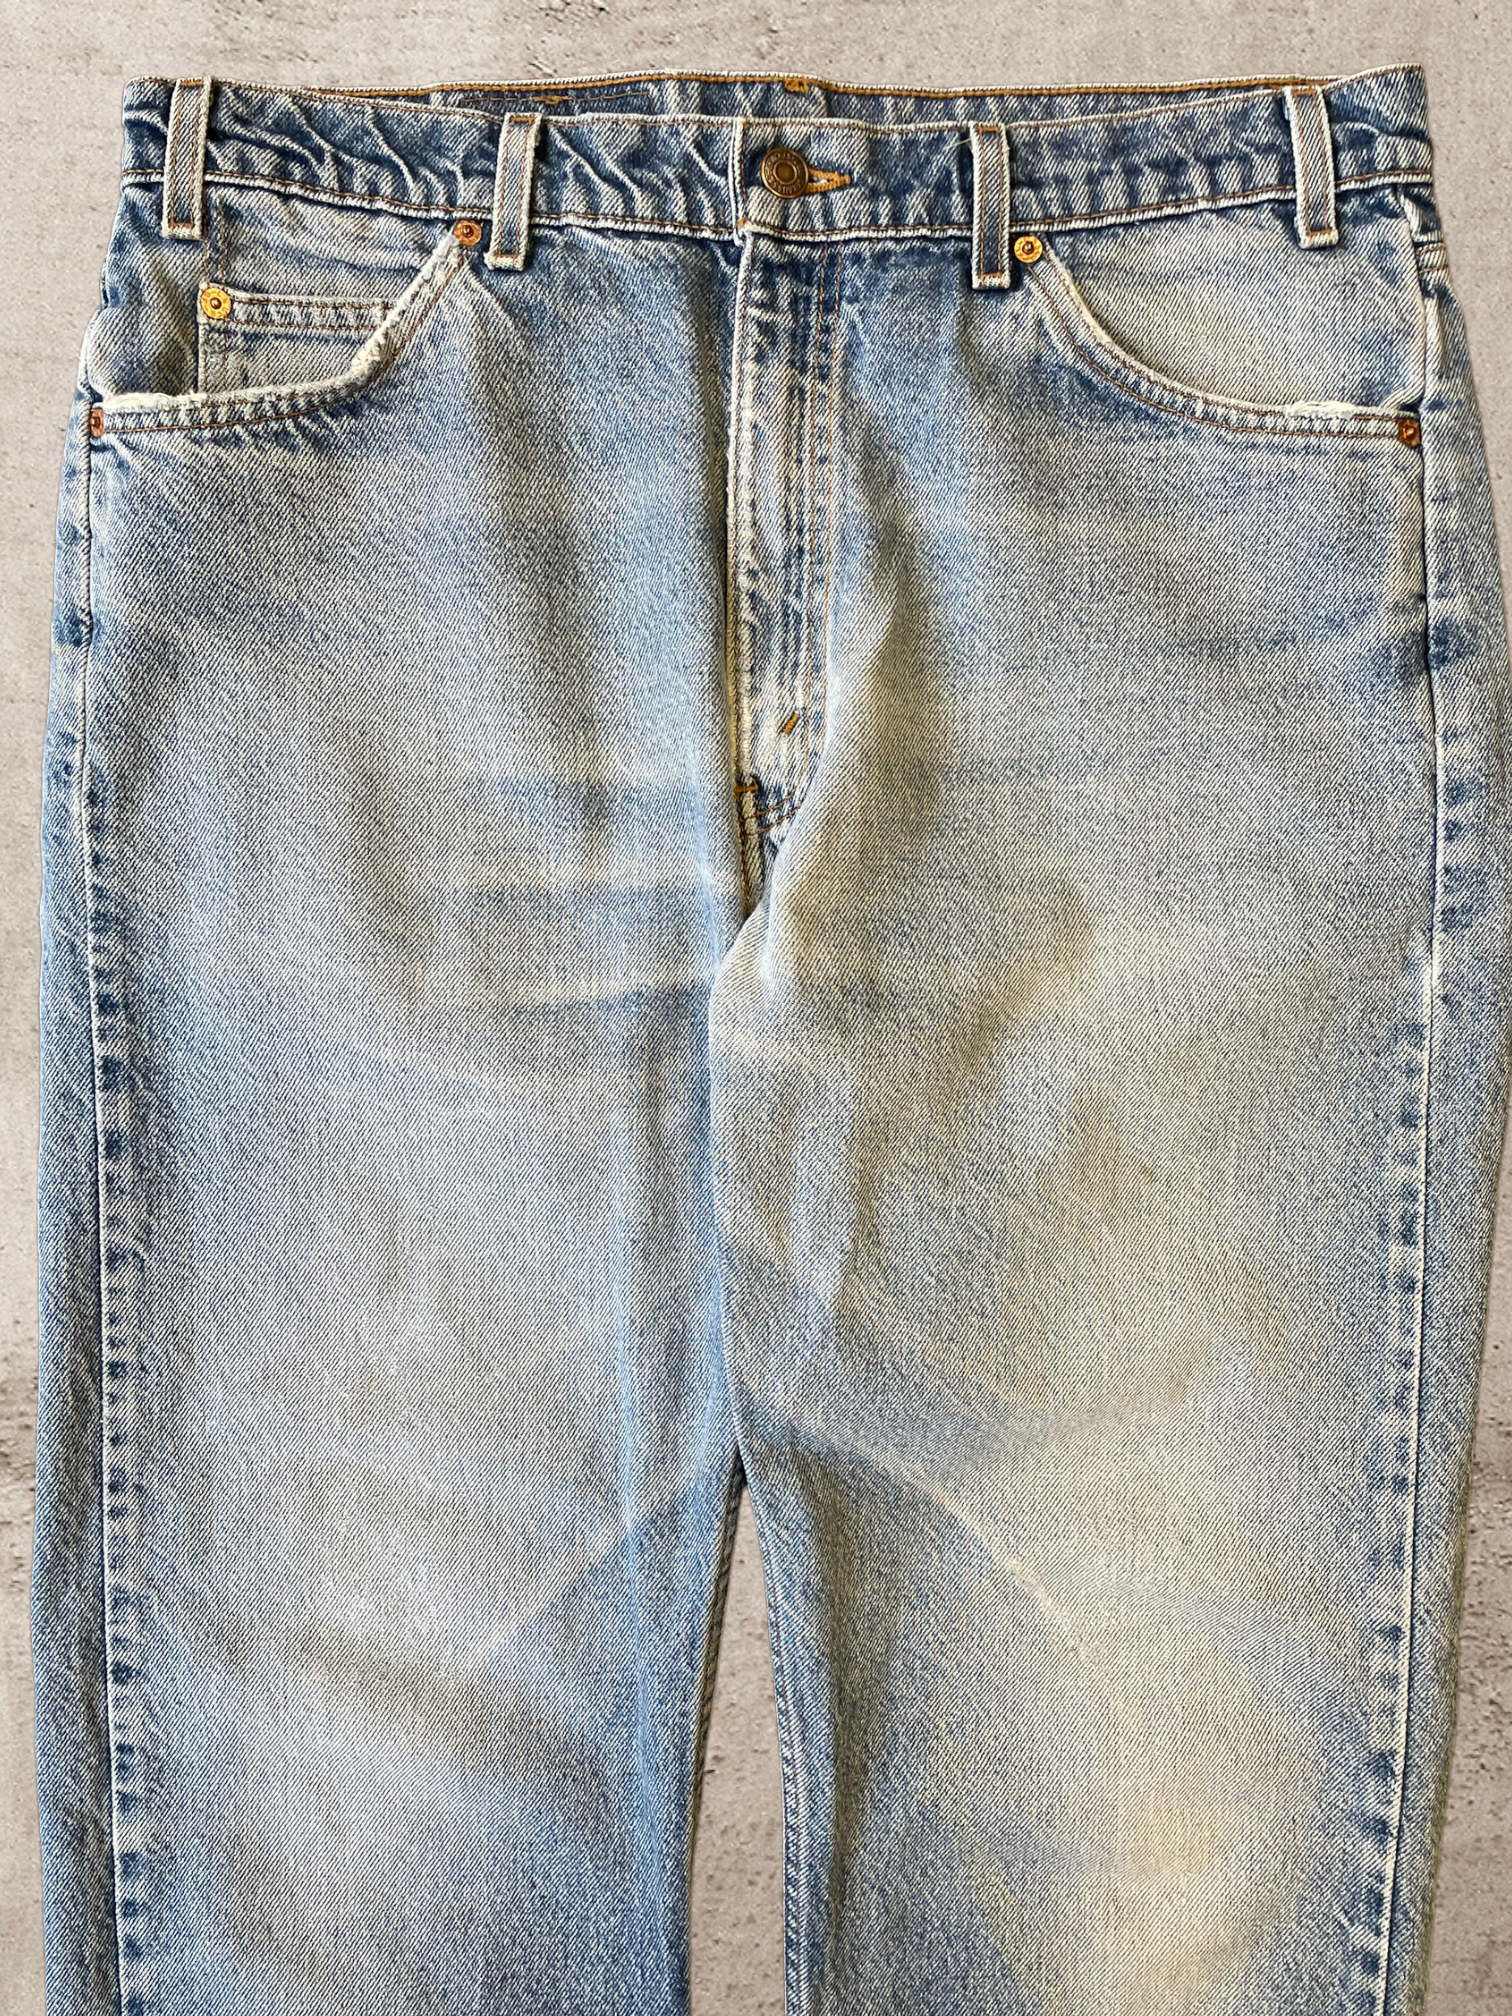 90s Levi 560 Loose Fit Jeans - 36x30